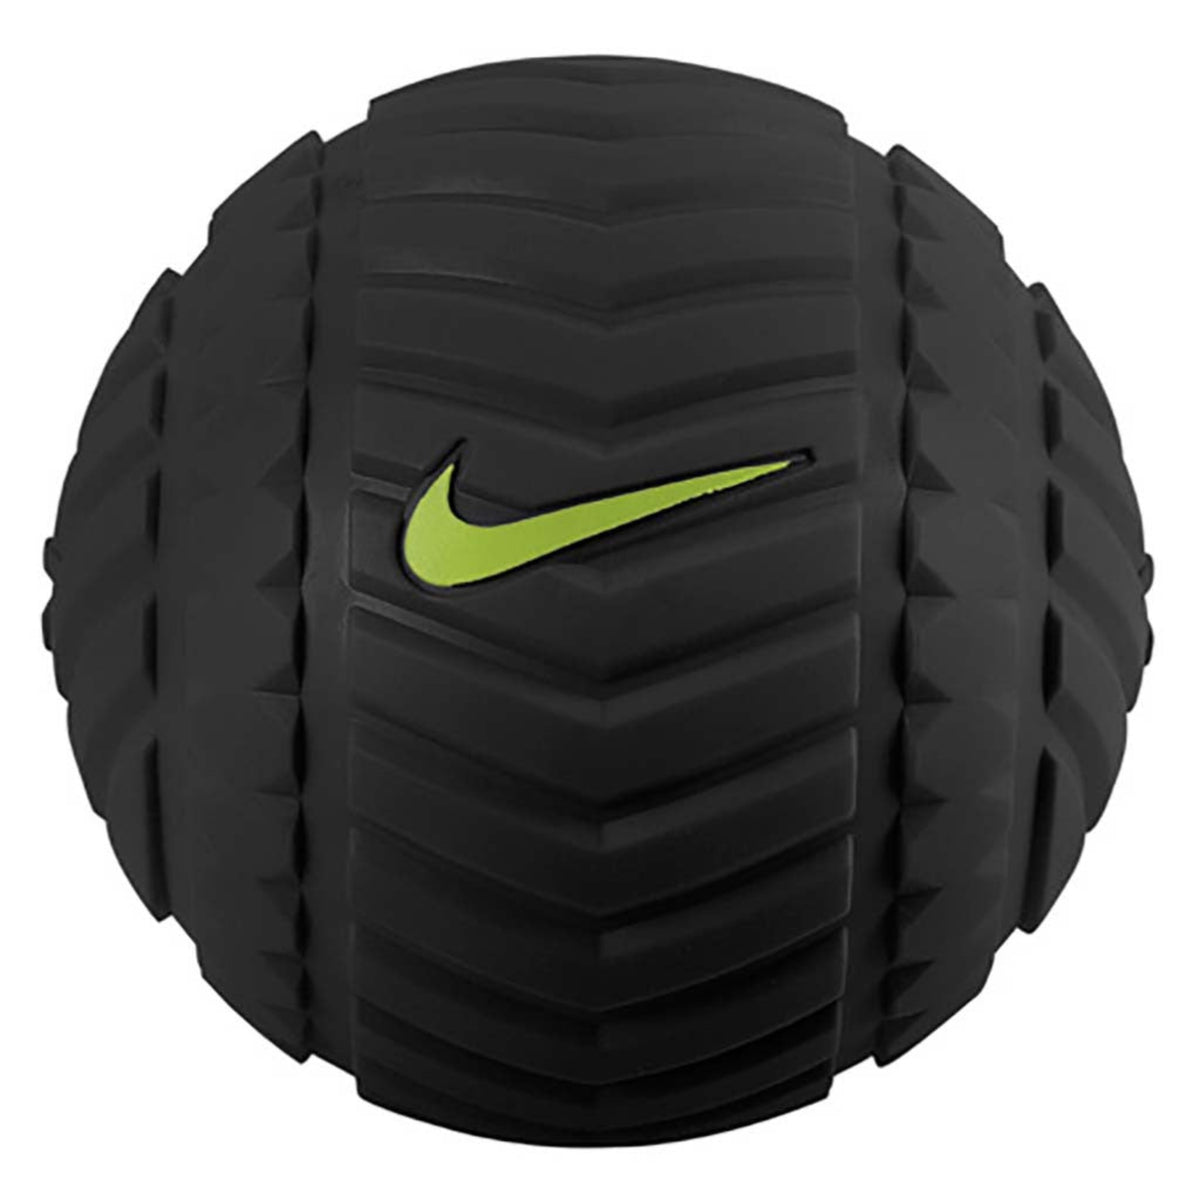 Balle de massage et récupération Nike recovery ball noir volt